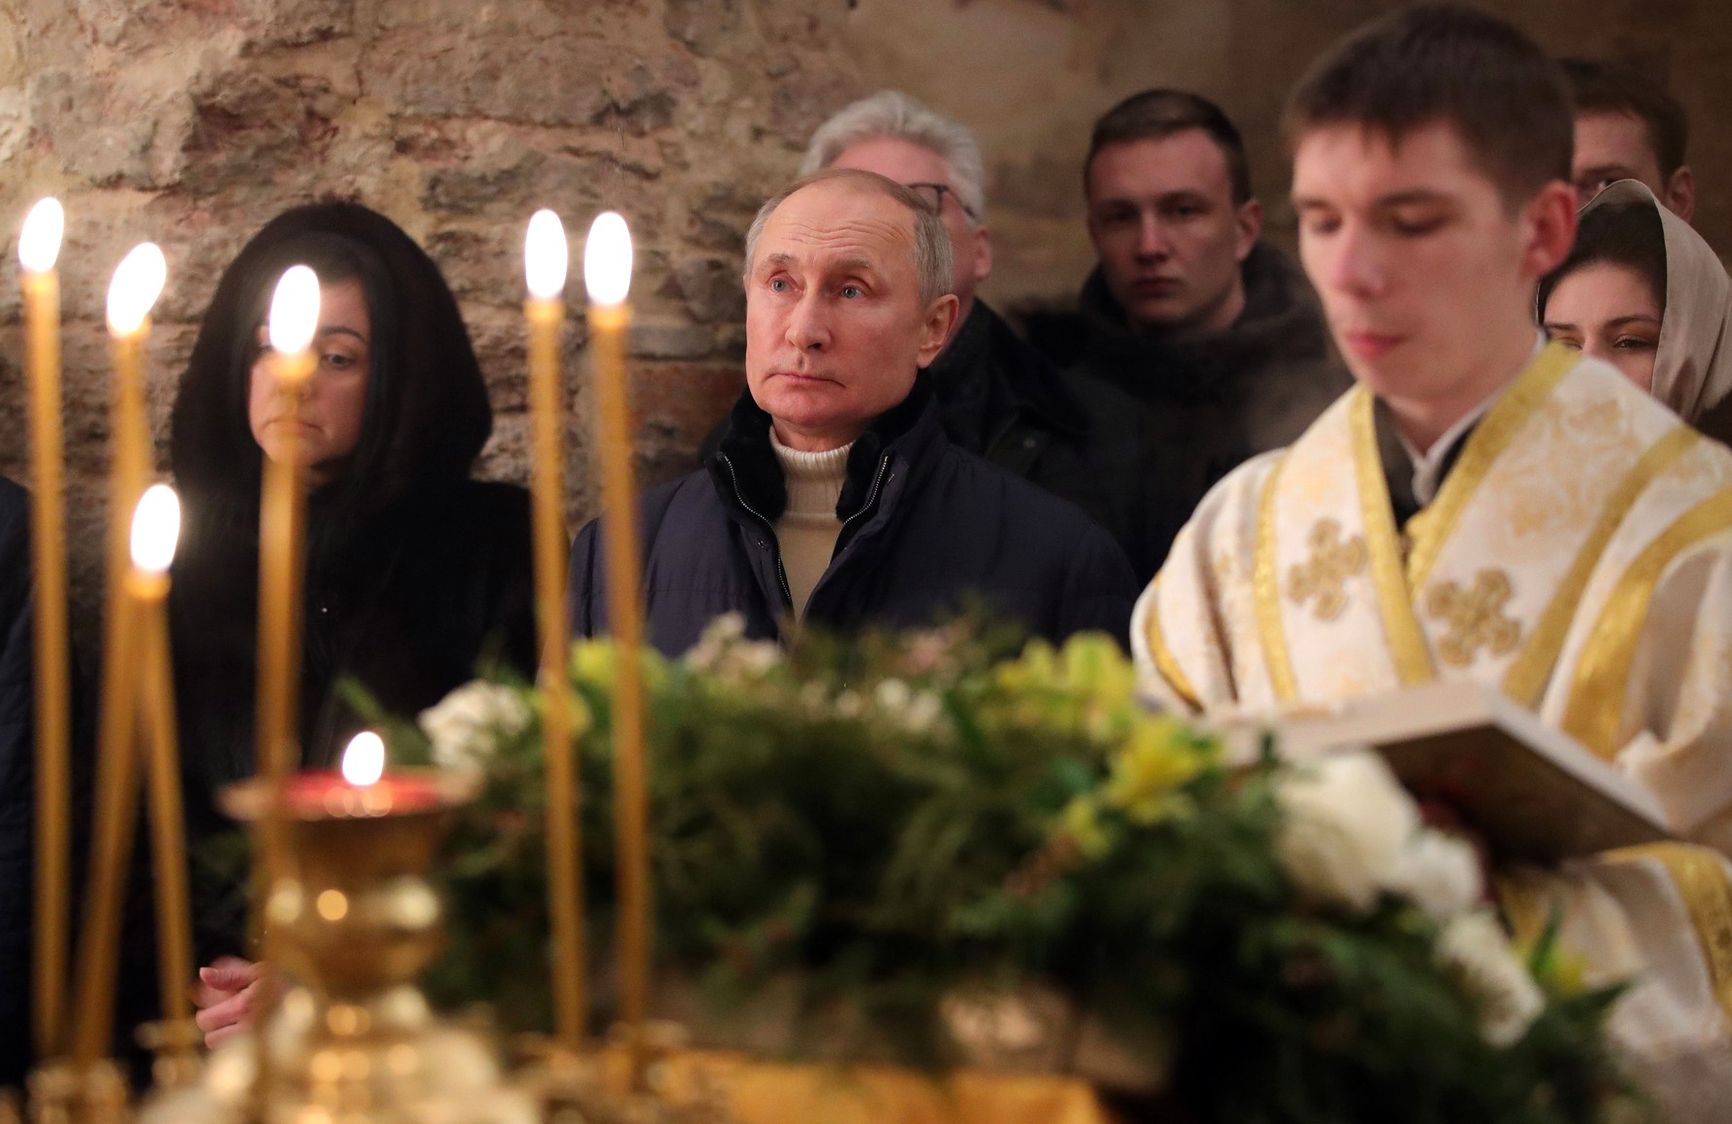 Володимир Путін відвідав Різдвяну службу в храмі. Він не одягав маску і не дотримувався дистанції